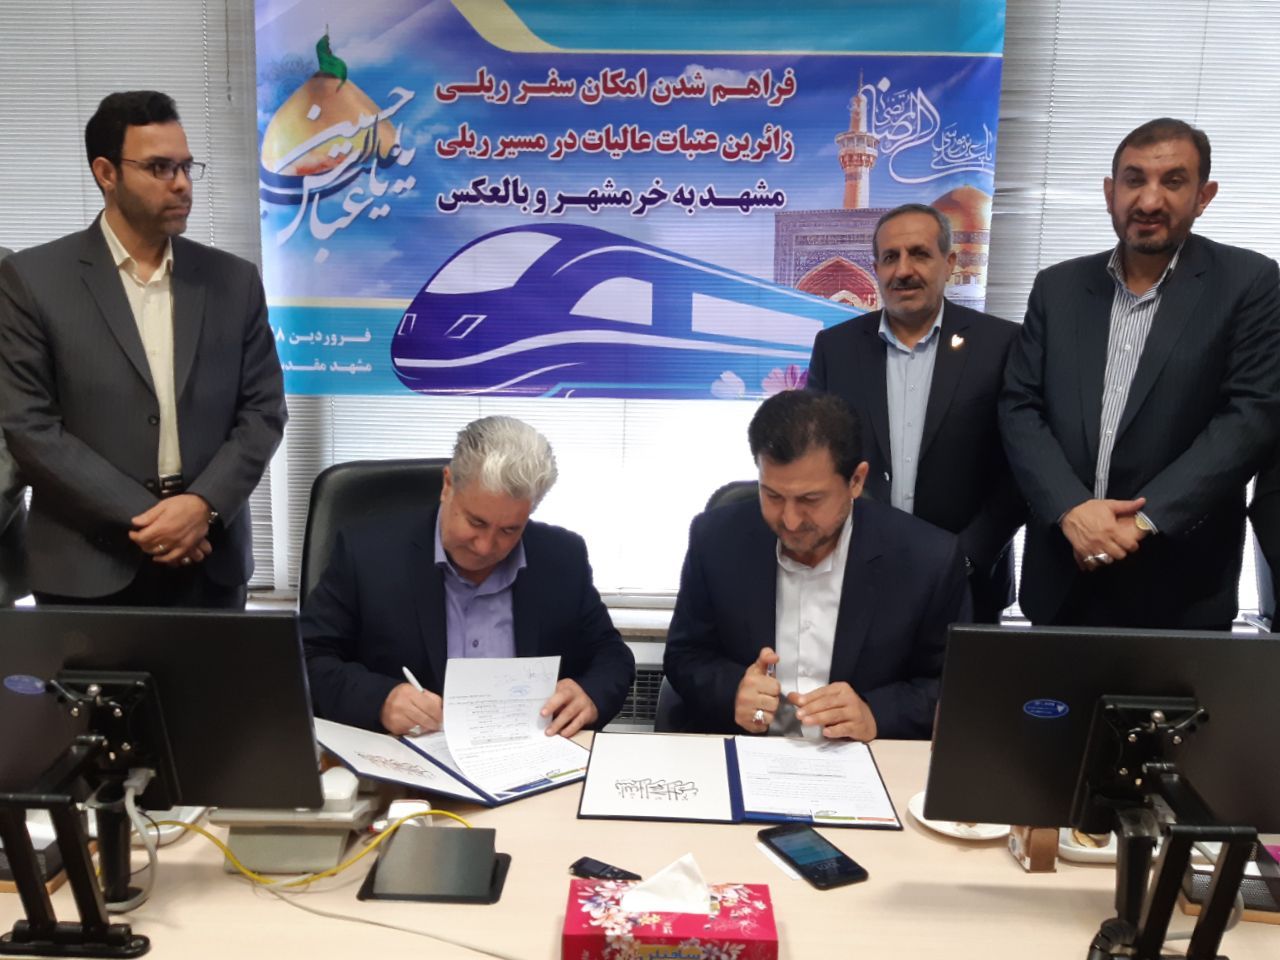 انعقاد قرارداد فراهم شدن امکان سفر ریلی زائرین عتبات عالیات در مسیر مشهد به خرمشهر و بالعکس